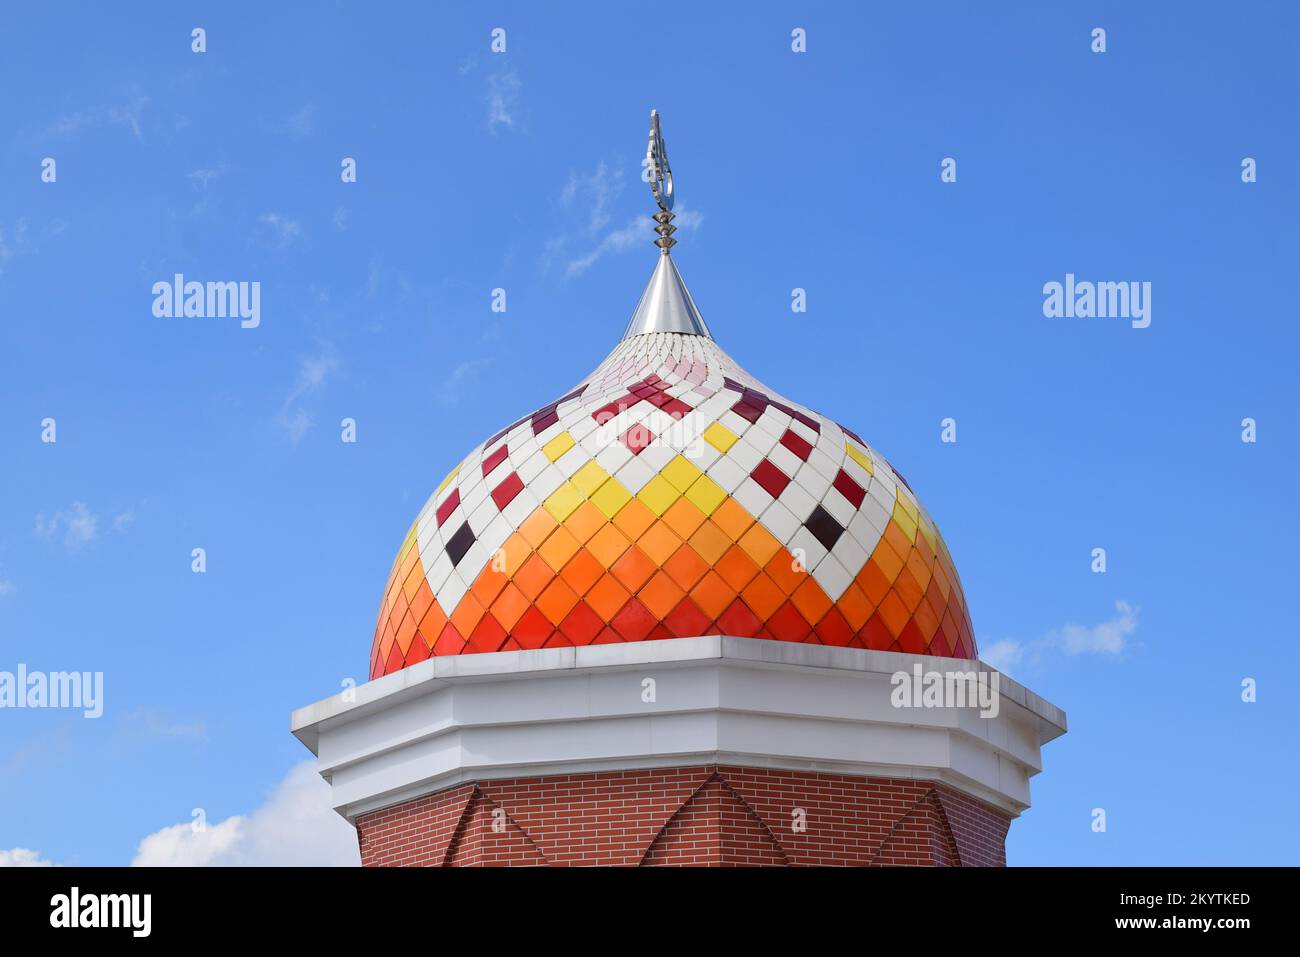 Moschee Towers in Indonesien. Moschee mit islamischem Hintergrund. Das Design der Moschee ist in der Tradition islamischer religiöser Architektur. Stockfoto